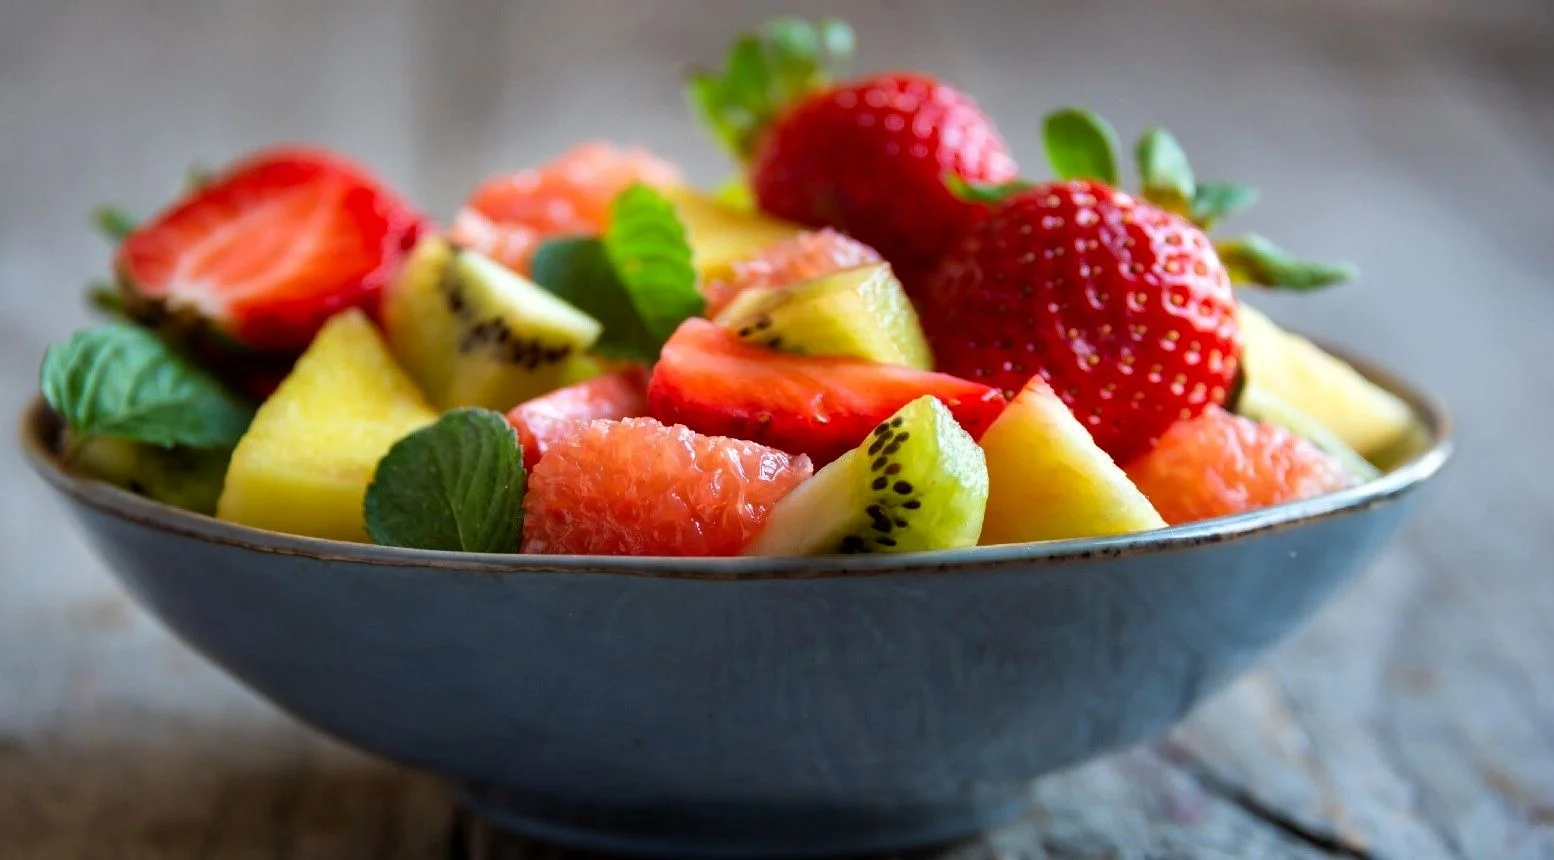 اگه خواب راحت نداری حتما این میوه ها رو بخور! | میوه های مفید در درمان بی خوابی